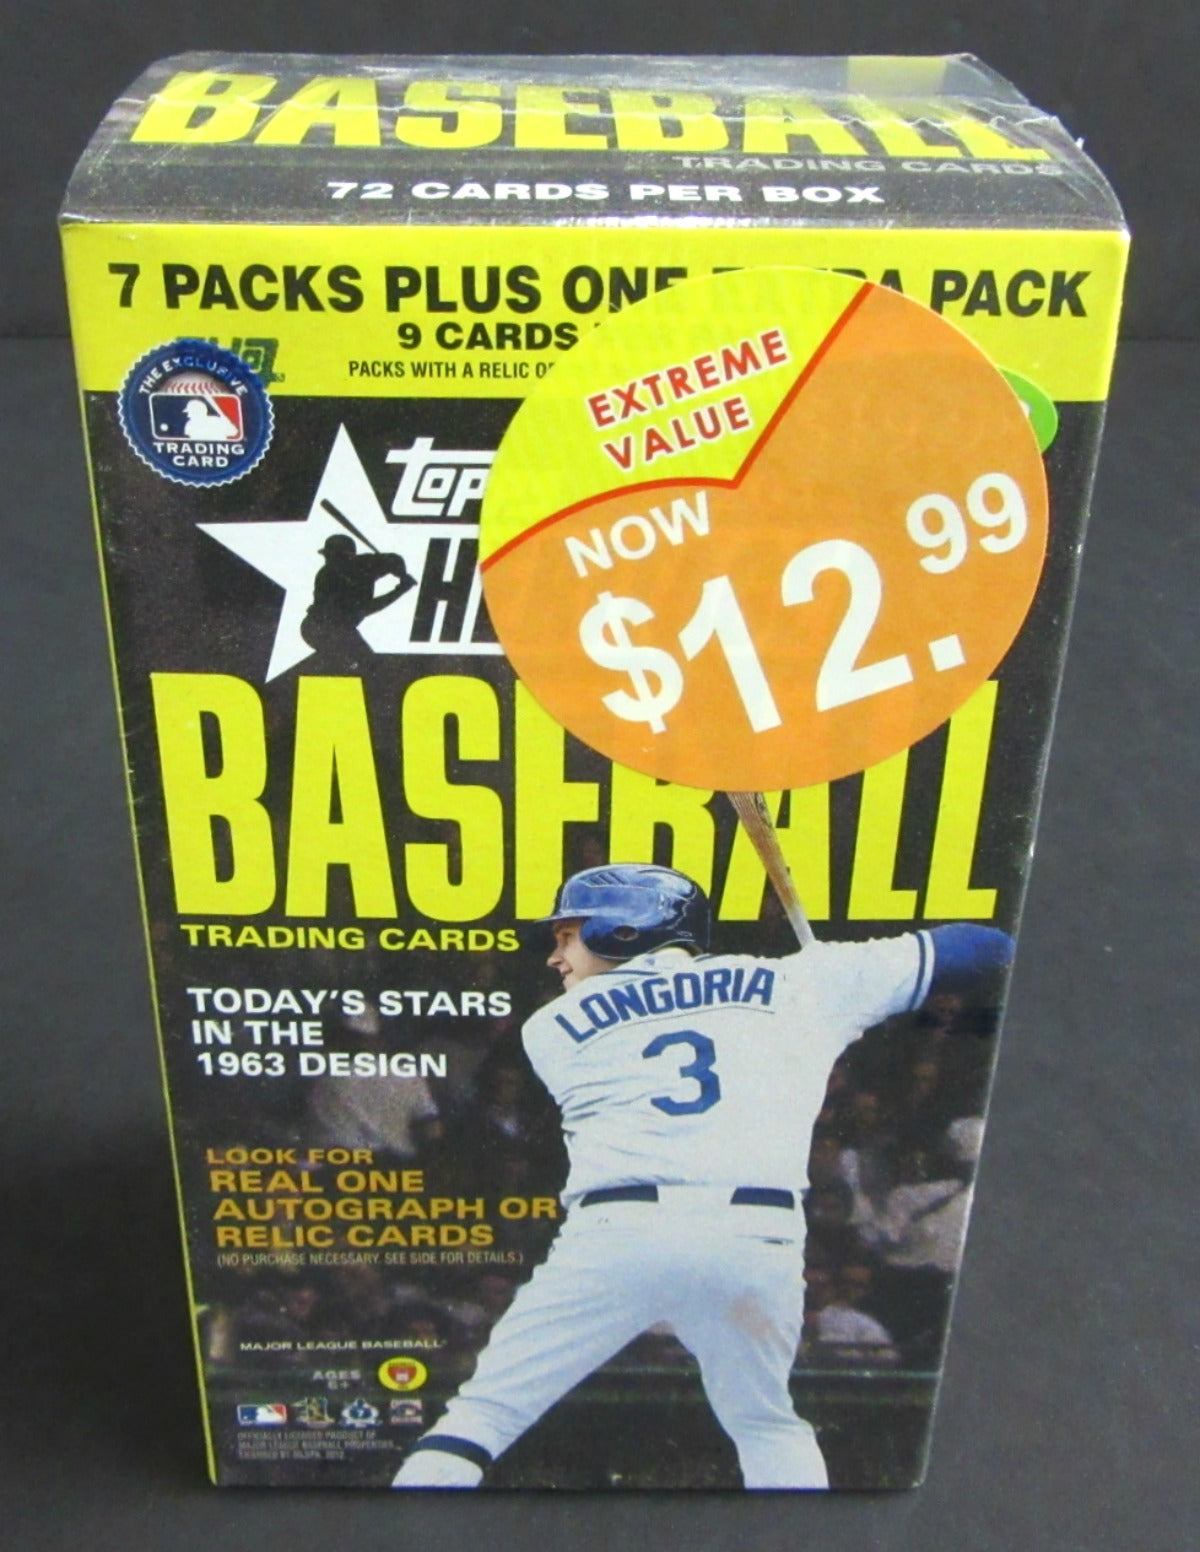 2012 Topps Heritage Baseball Blaster Box (8/9)